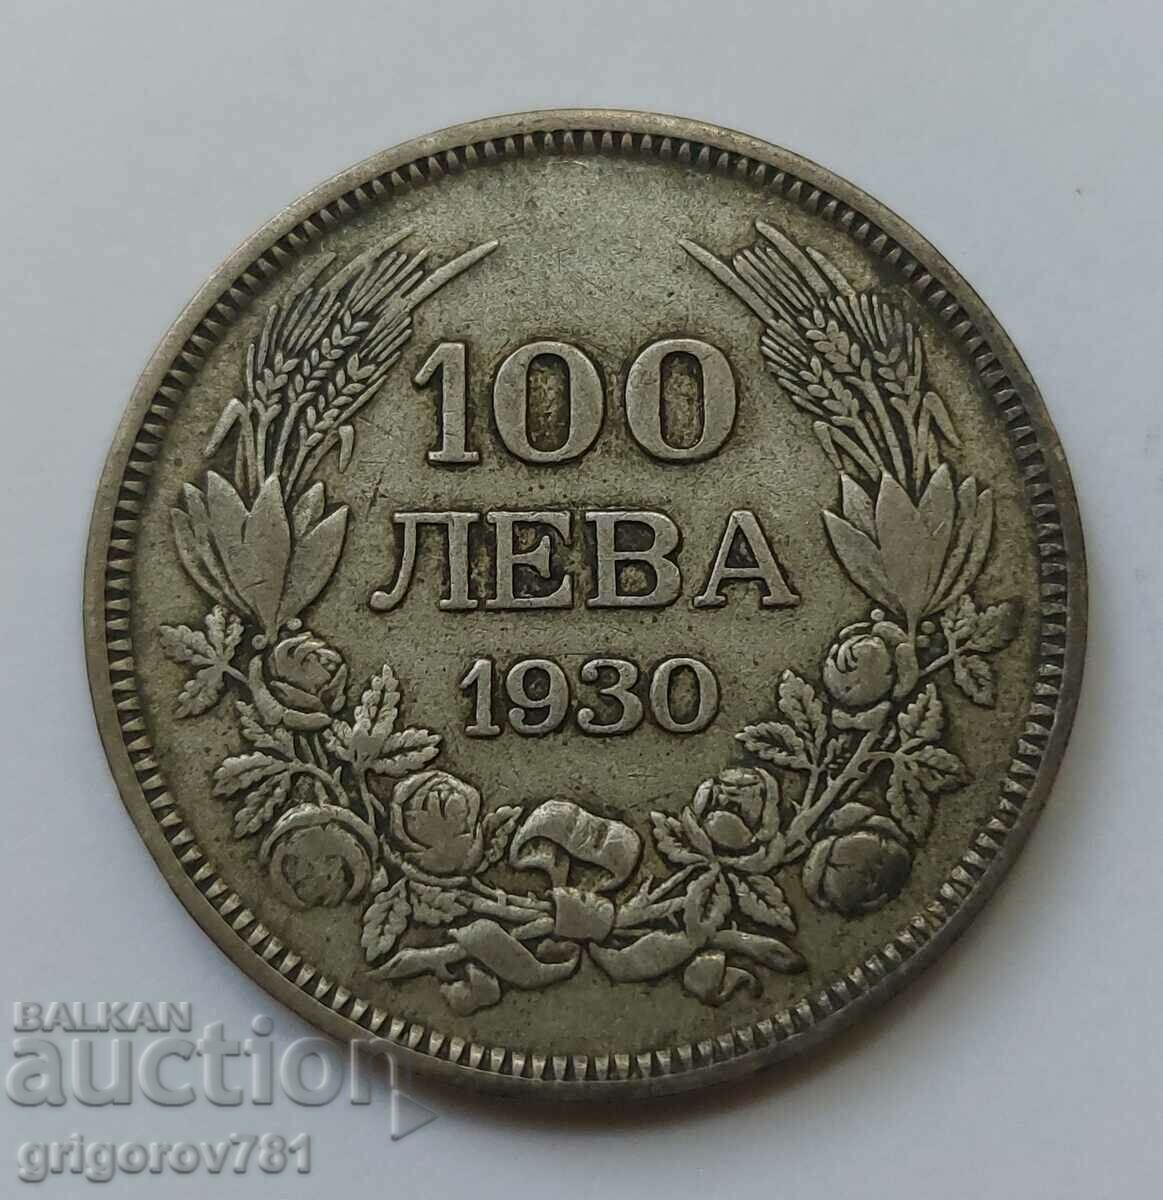 100 leva silver Bulgaria 1930 - silver coin #3